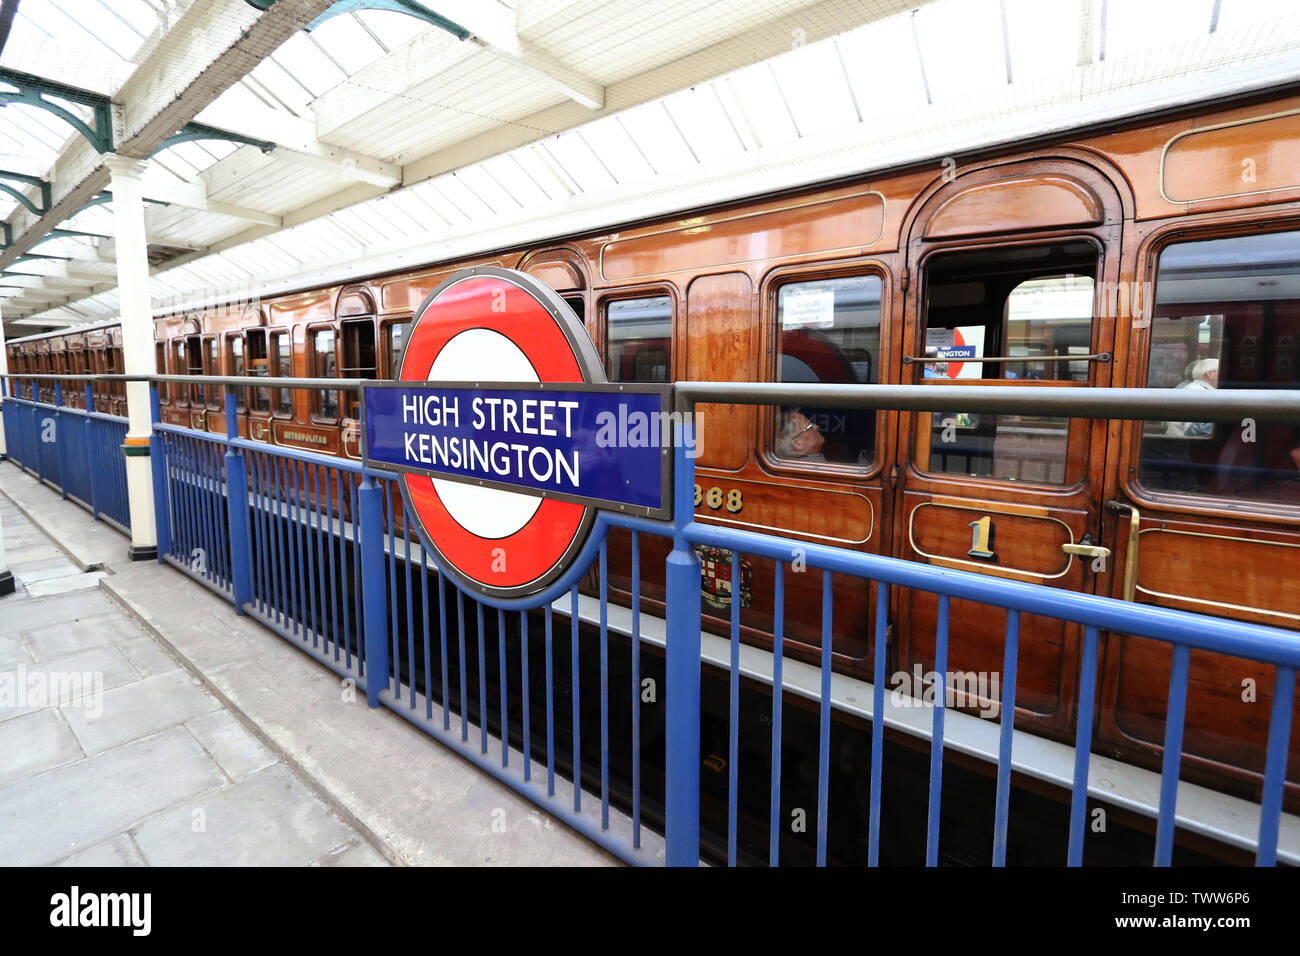 Dampf auf der U-Bahn-Linie District 150, District Line 150. Jahrestag, High Street Kensington U-Bahnstation, London, UK, 23. Juni 2019, Foto von Rich Stockfoto